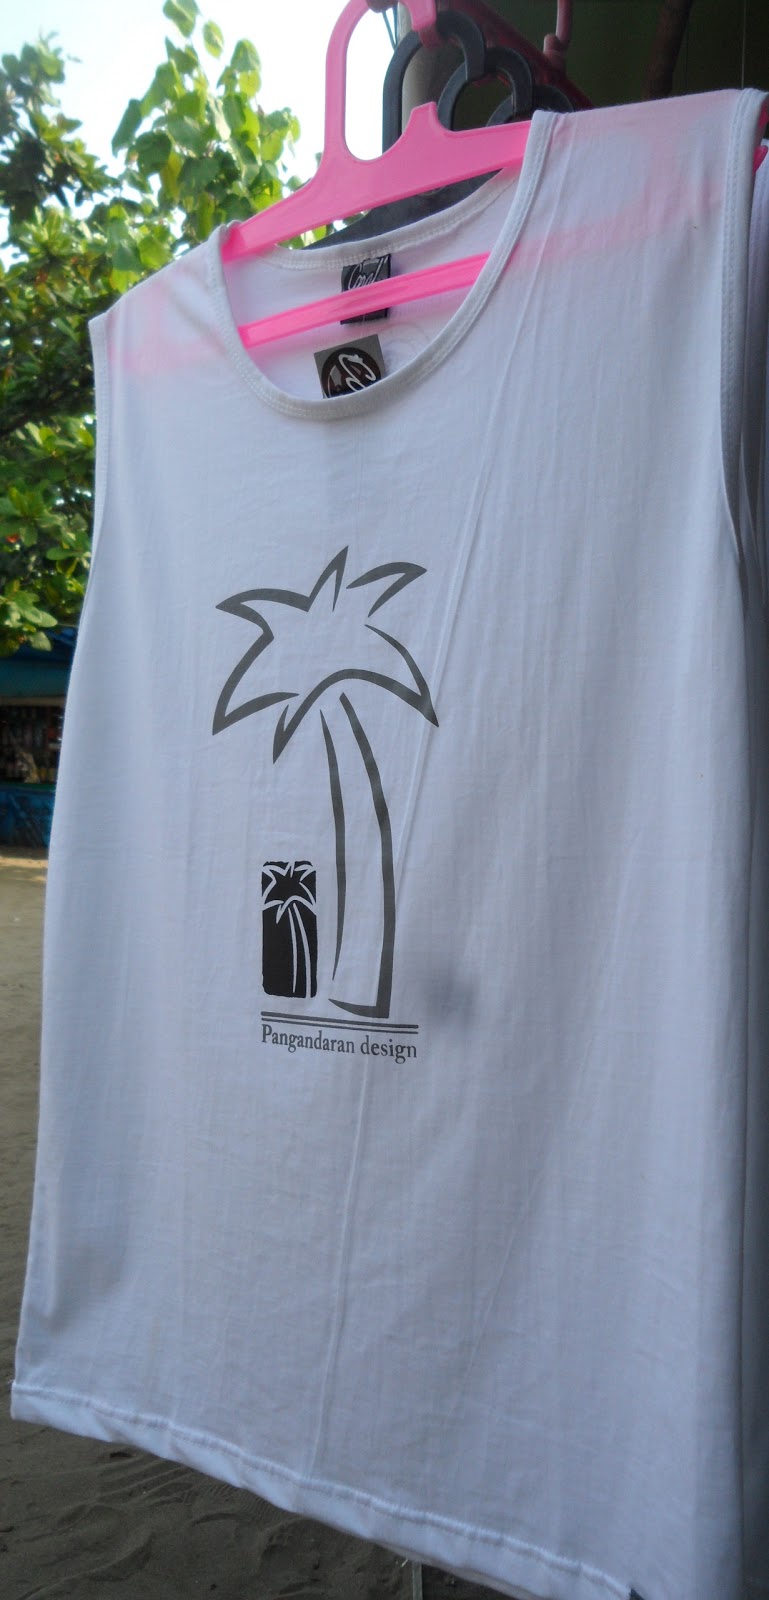  SOPAN  SOuvenir PANgandaran Baju  Pantai  Pangandaran B035